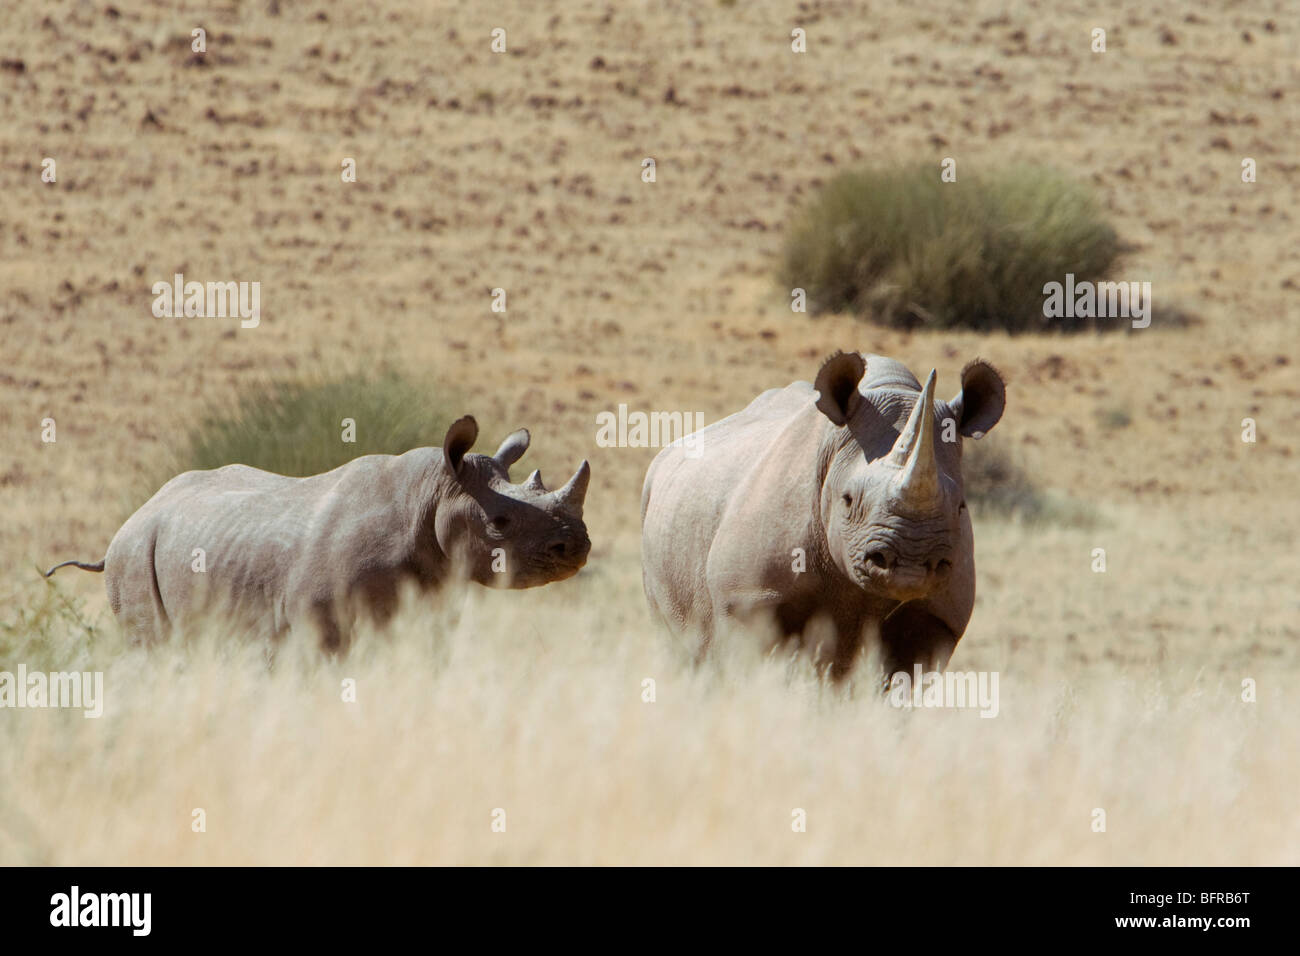 Desert-adapted black rhino Stock Photo